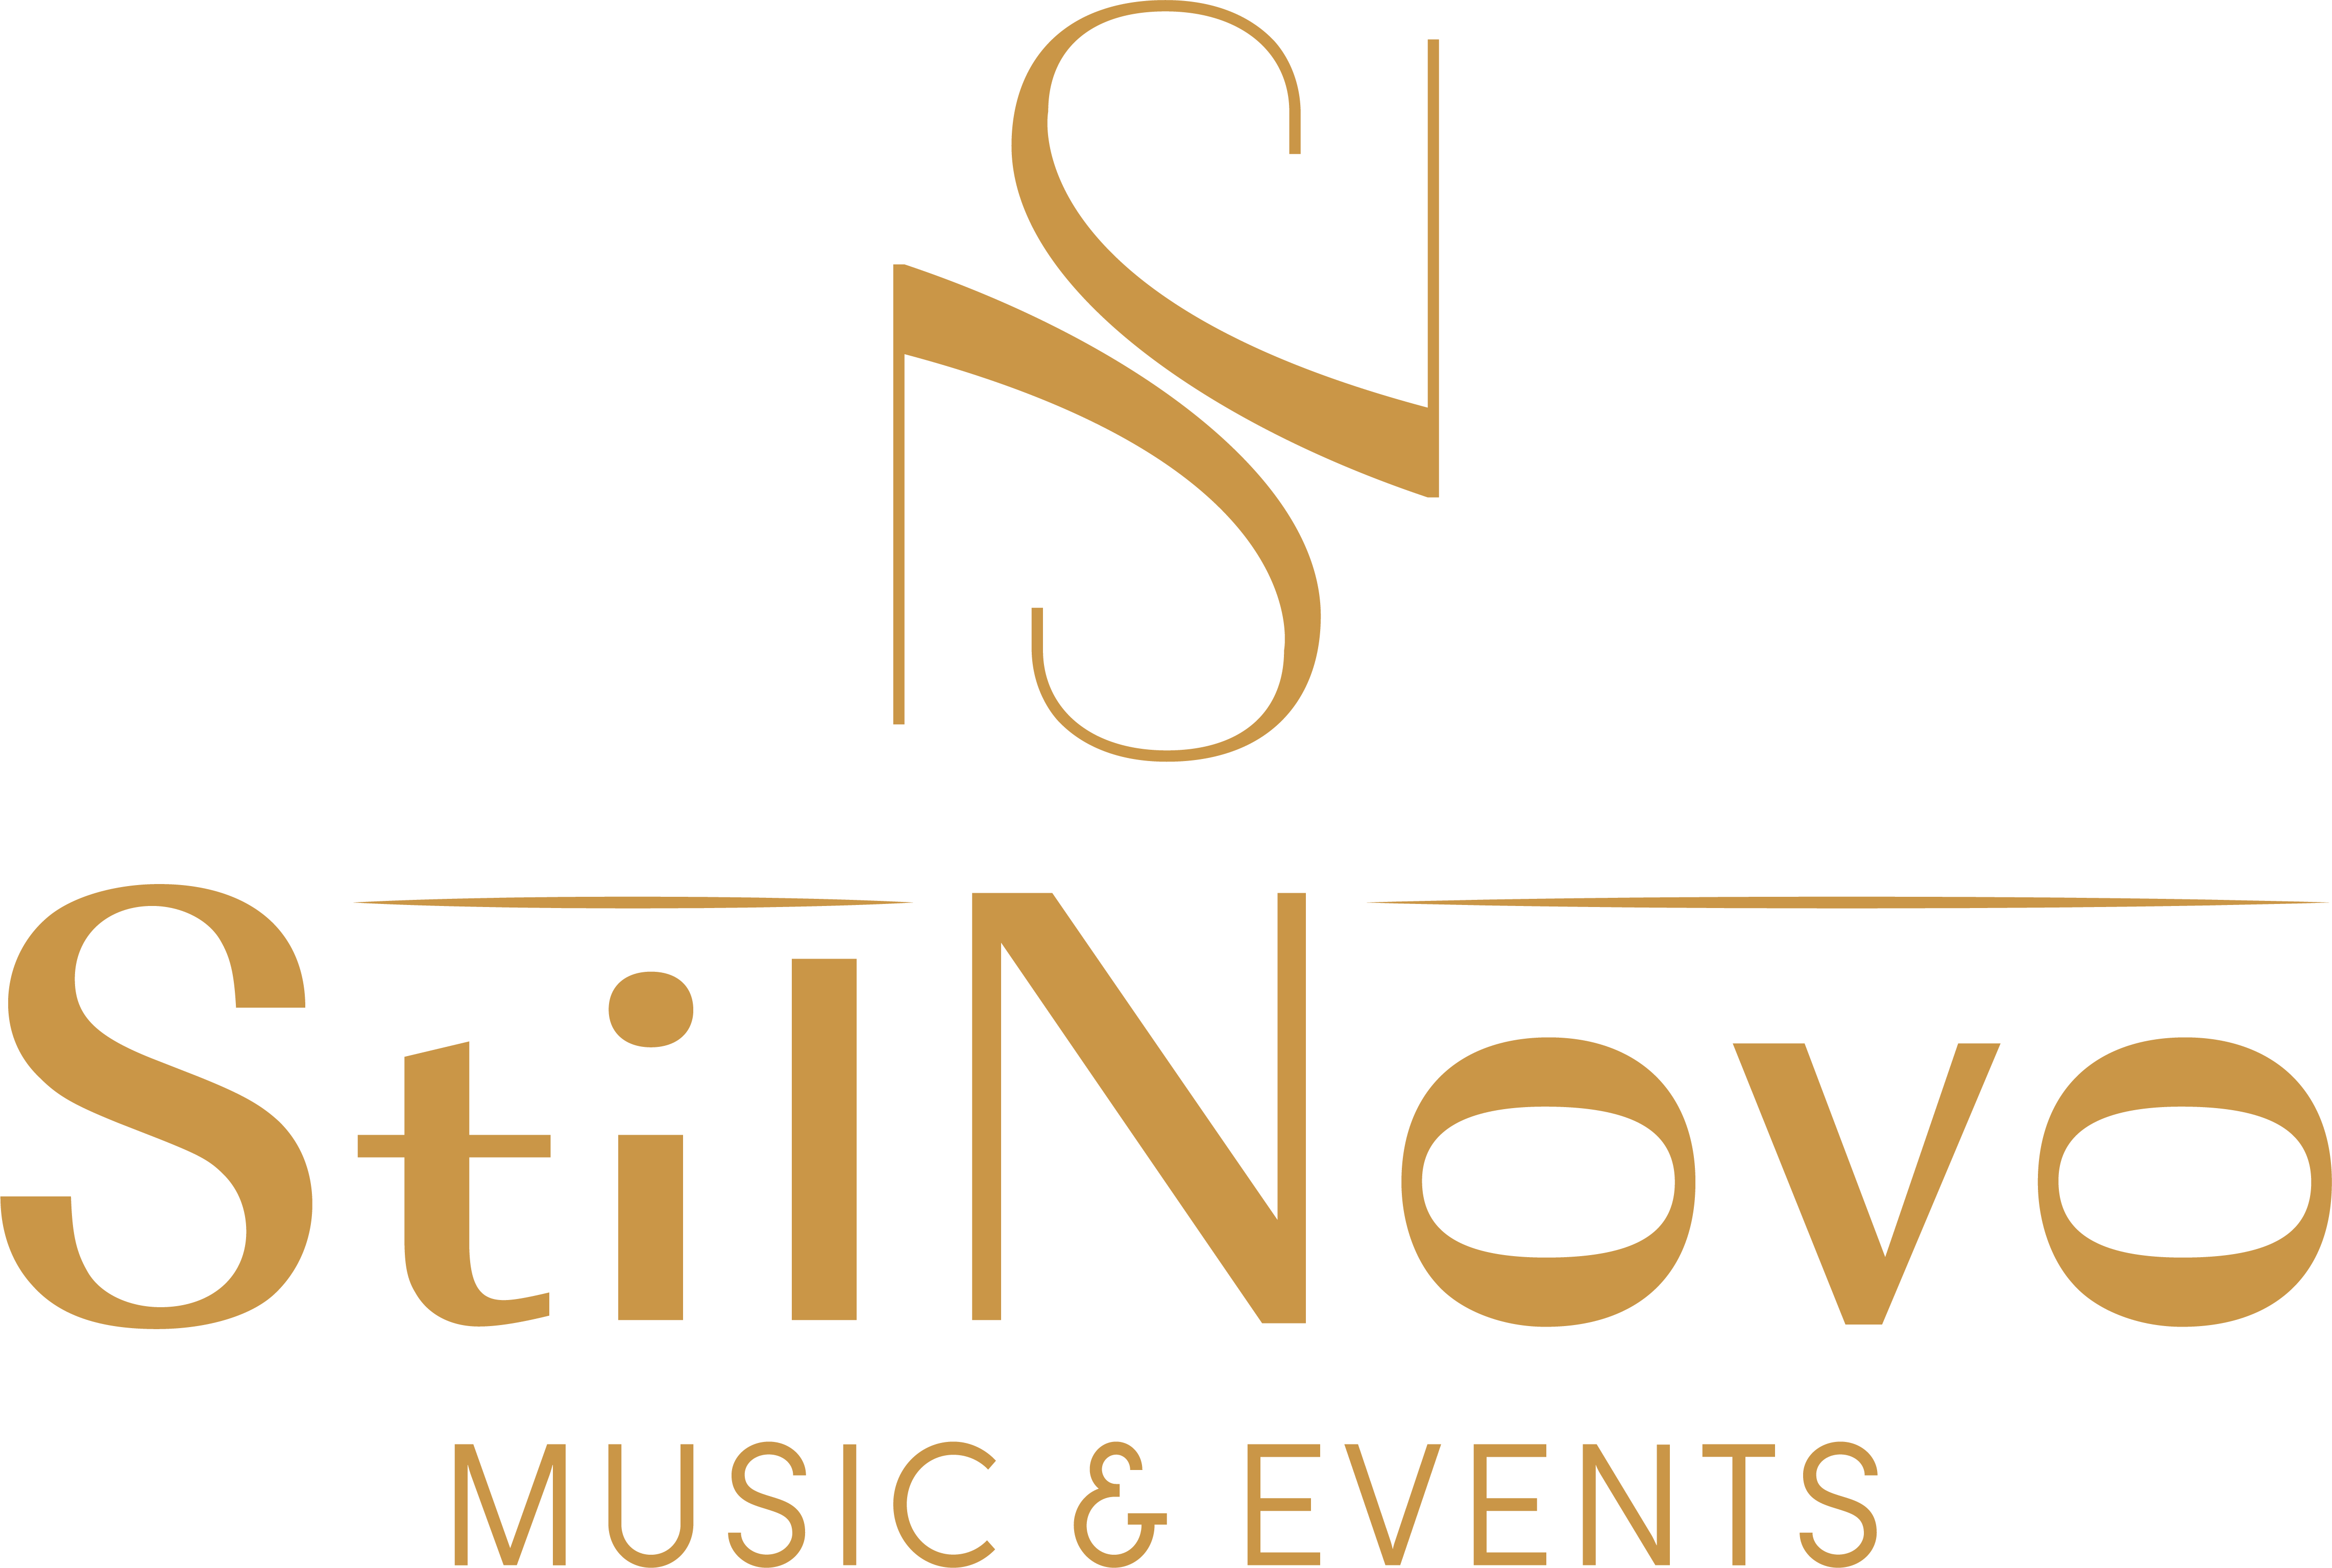 StilNovo - Music & Events